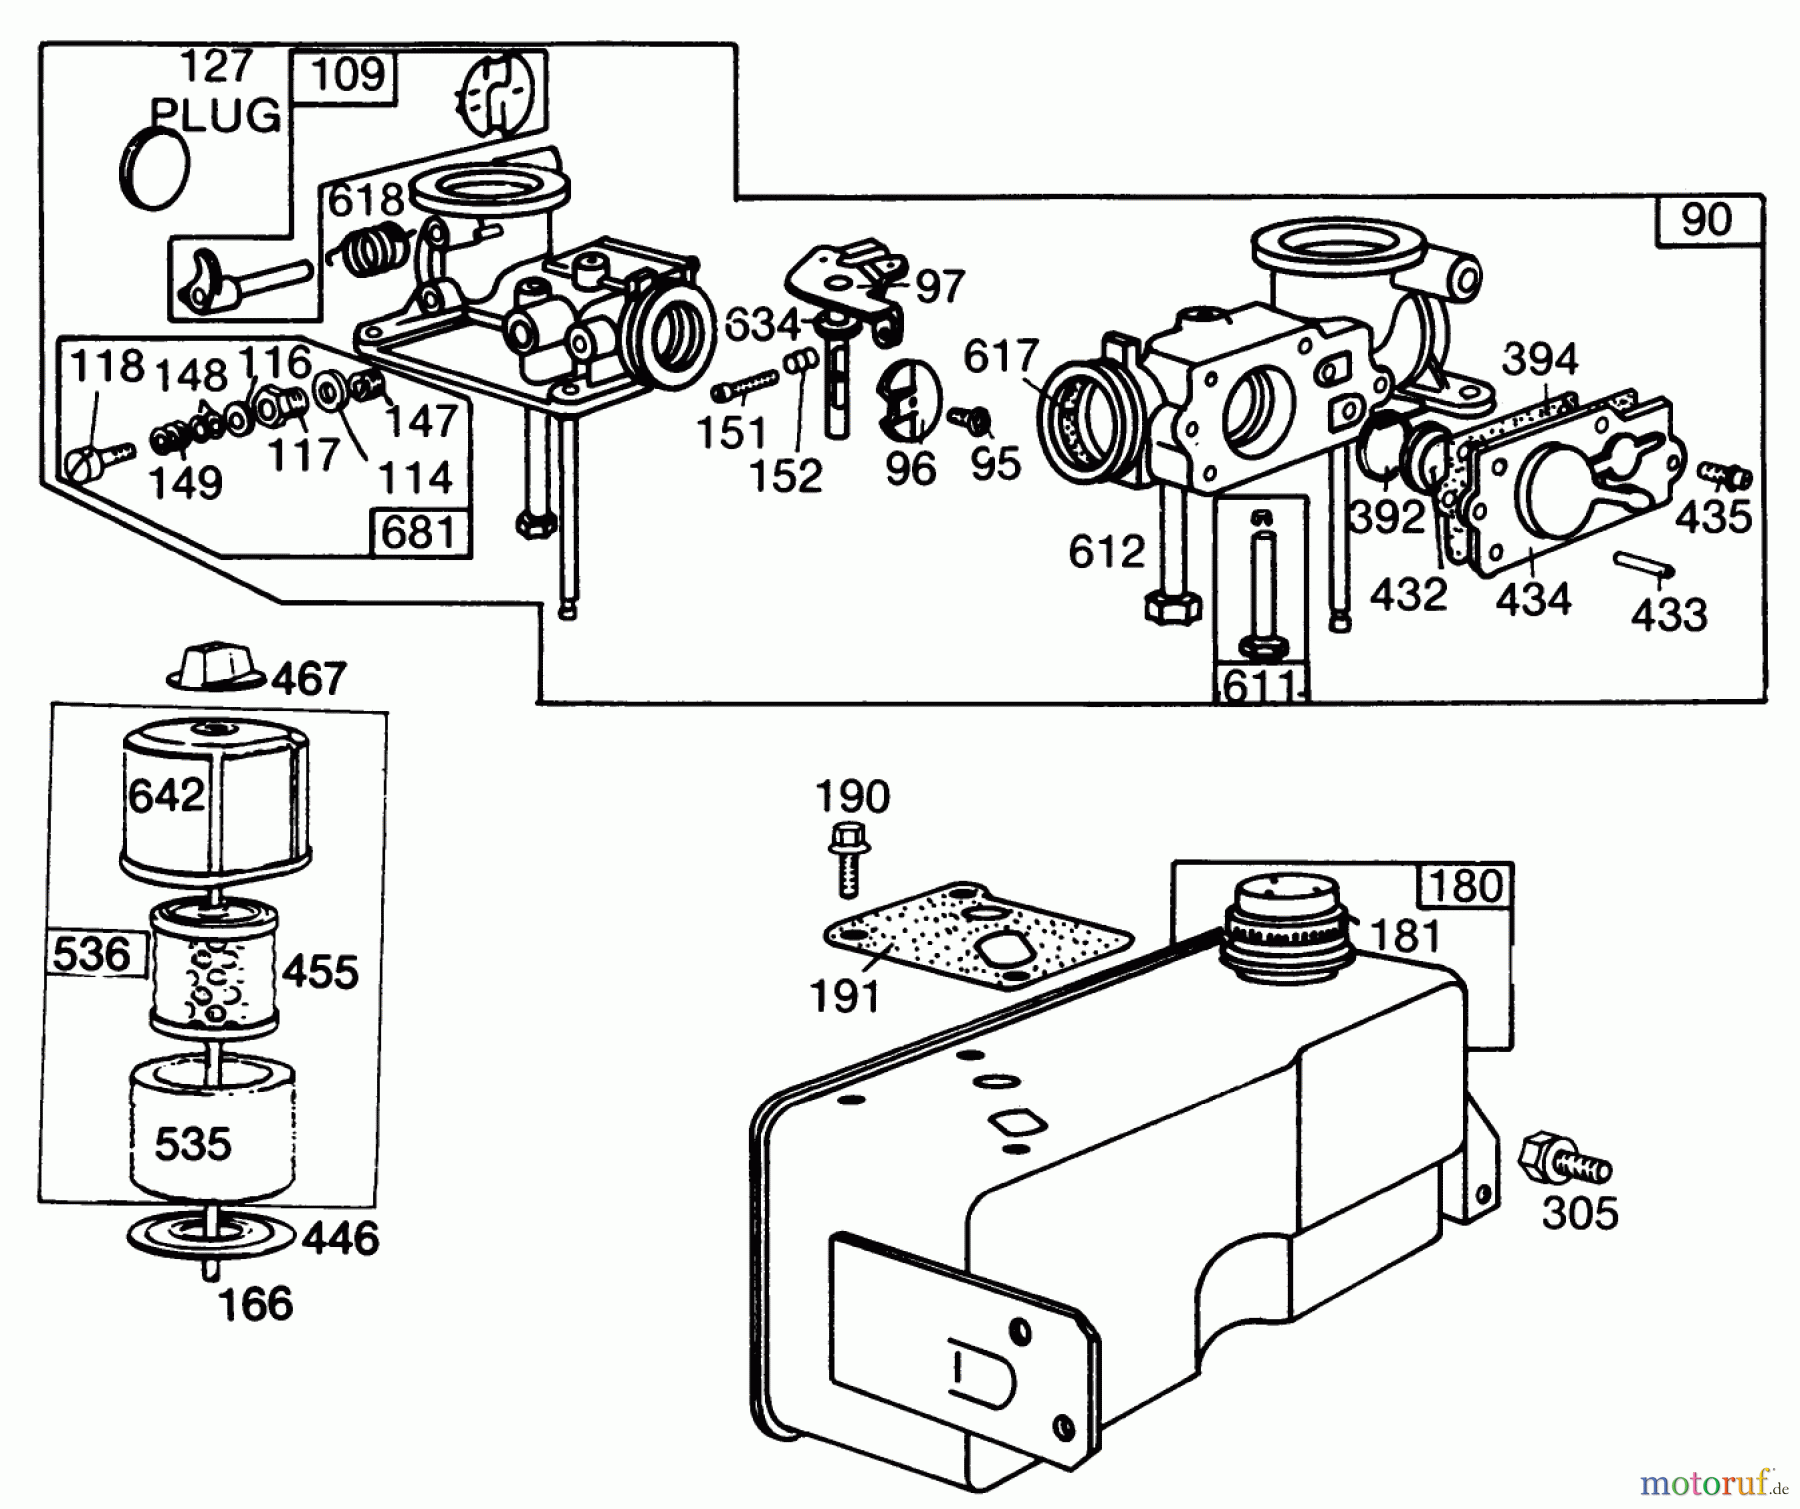  Toro Neu Mowers, Walk-Behind Seite 2 22005 - Toro Lawnmower, 1984 (4000001-4999999) ENGINE BRIGGS & STRATTON MODEL NO. 130902 TYPE 1200-01 #3